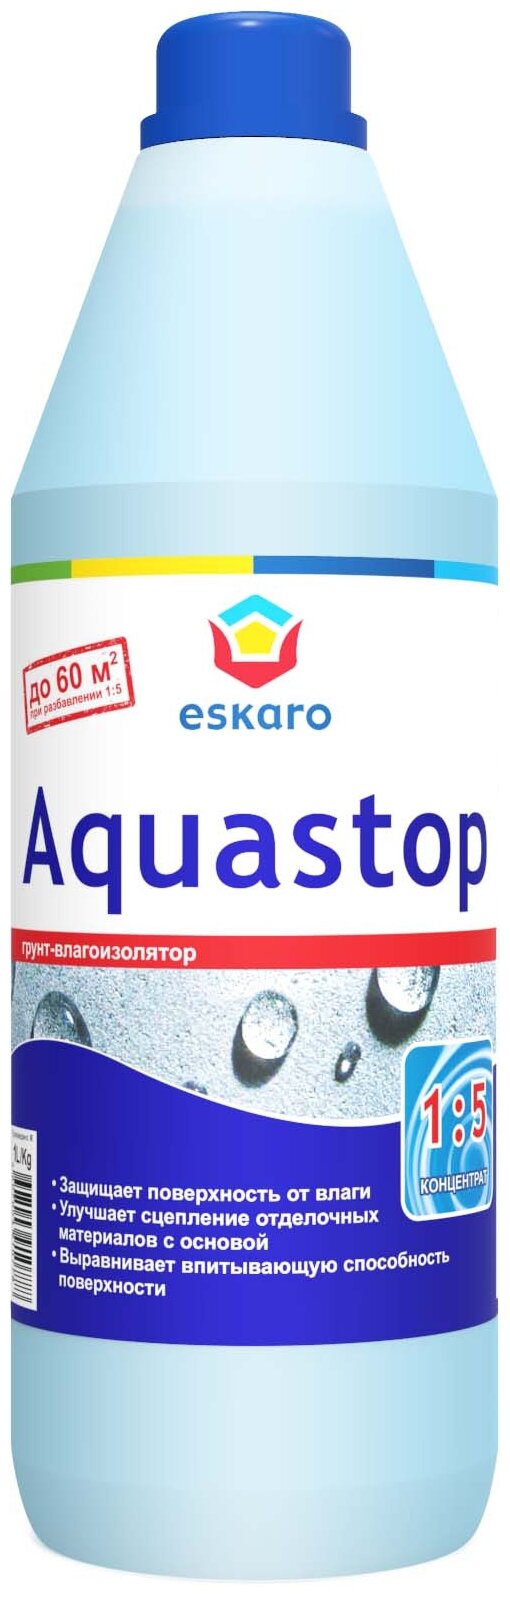 Eskaro Aquastop Professional грунт влагоизолятор, концентрат 1:10 (прозрачный, 1л)